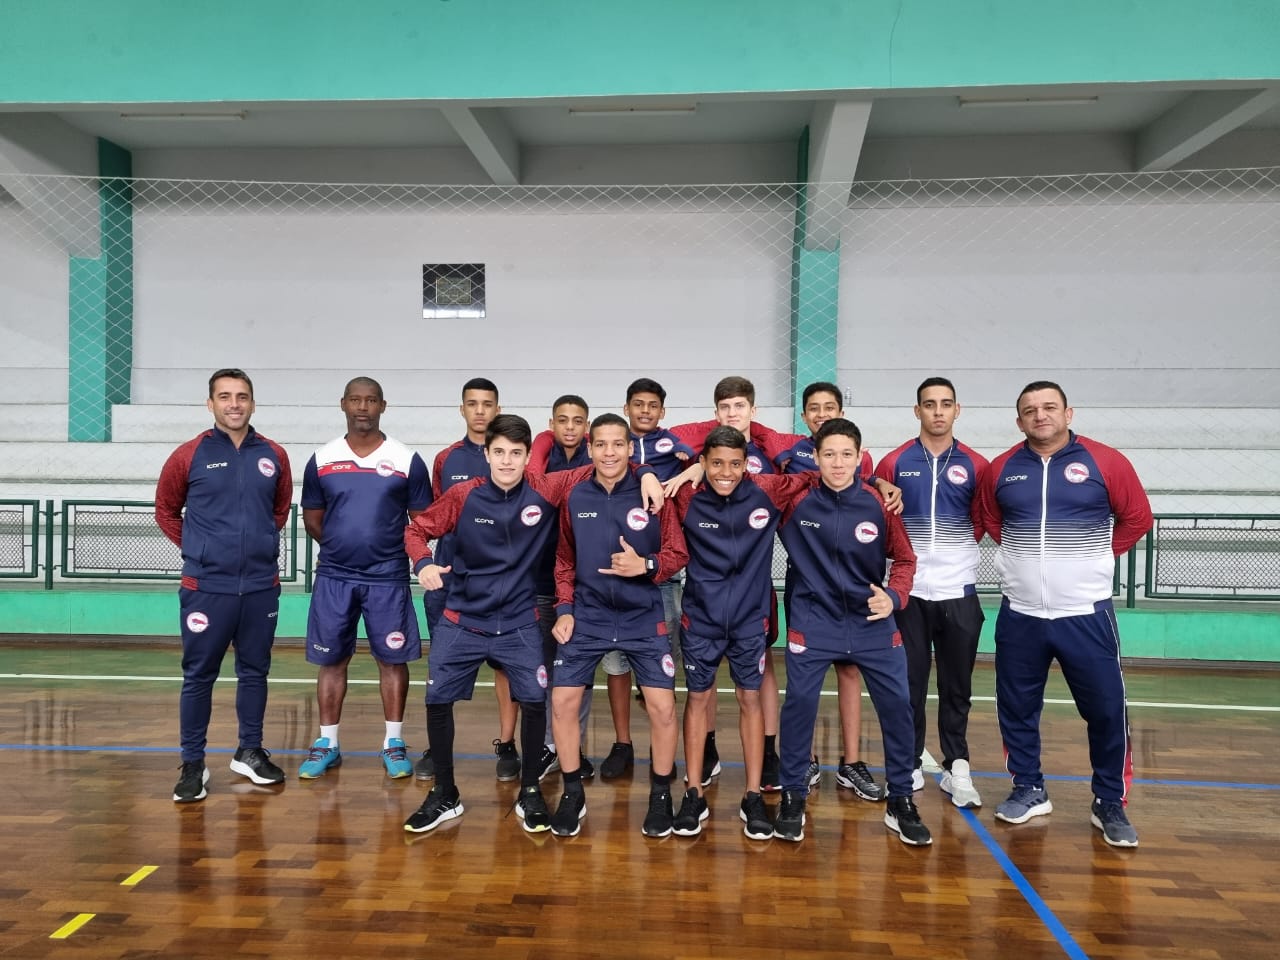 ESTADUAL SUB 15 – MASCULINO – EDIÇÃO 2021 – Federação Mineira de Futsal